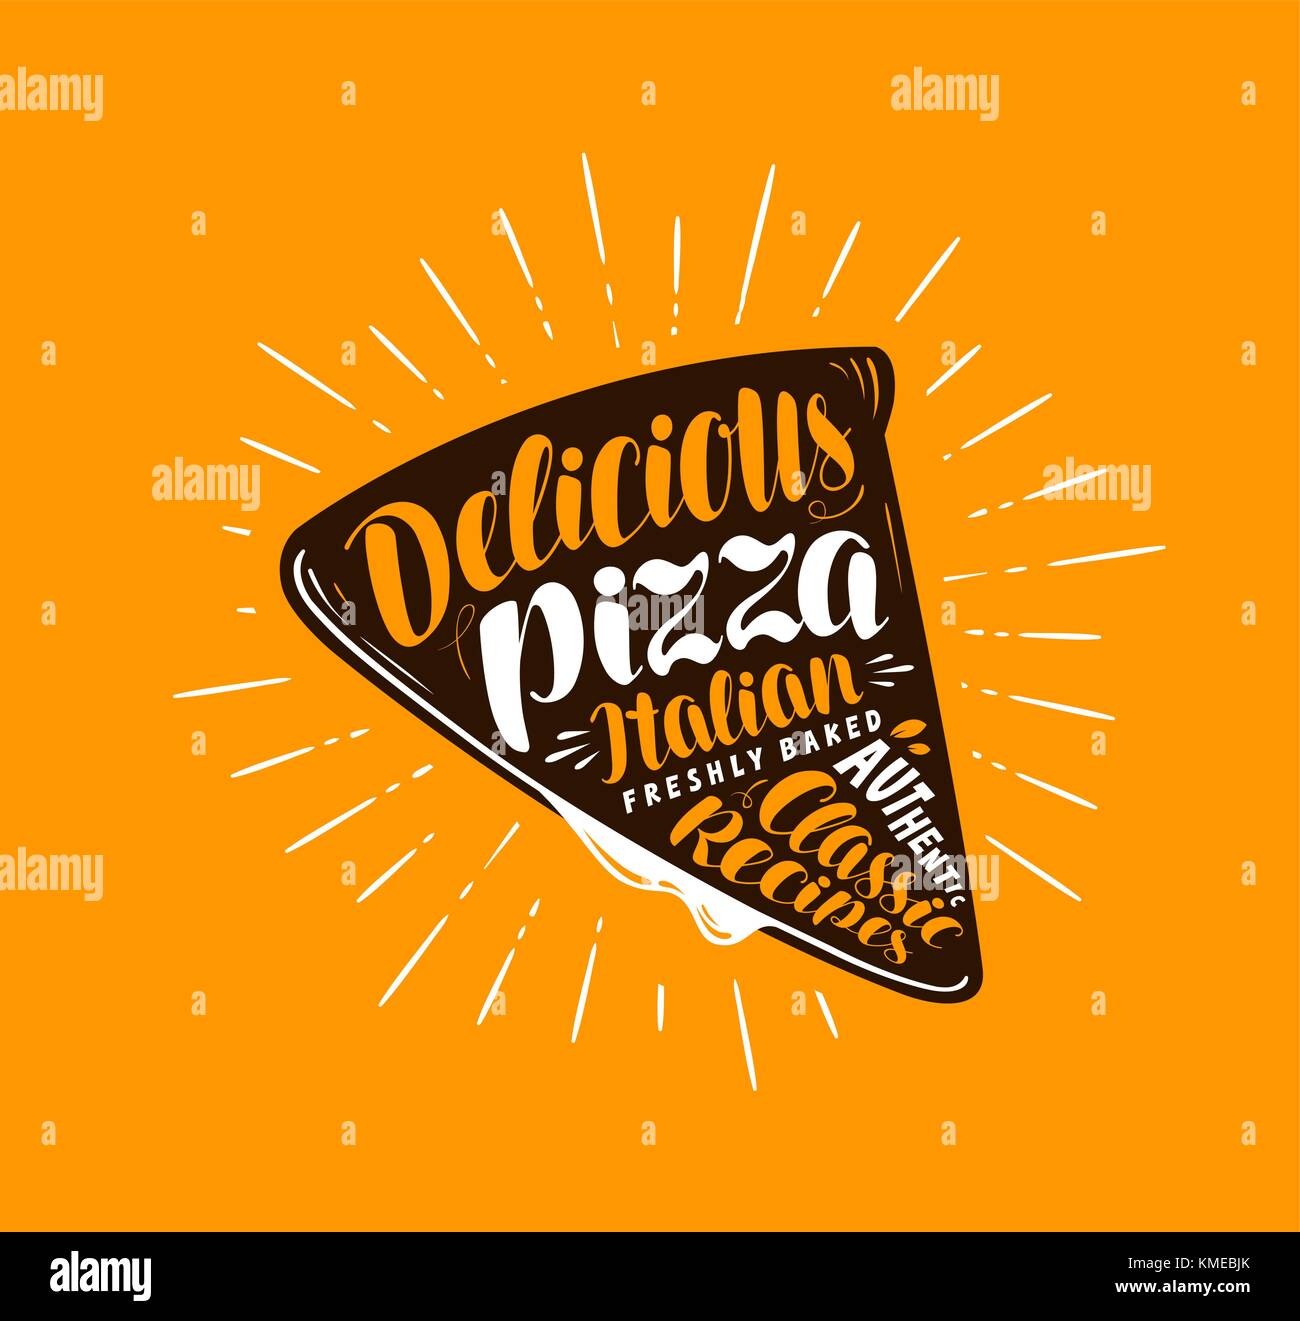 Slice pizza. elemento de menú o restaurante pizzería. Rotulación manuscrita, la caligrafía ilustración vectorial Ilustración del Vector